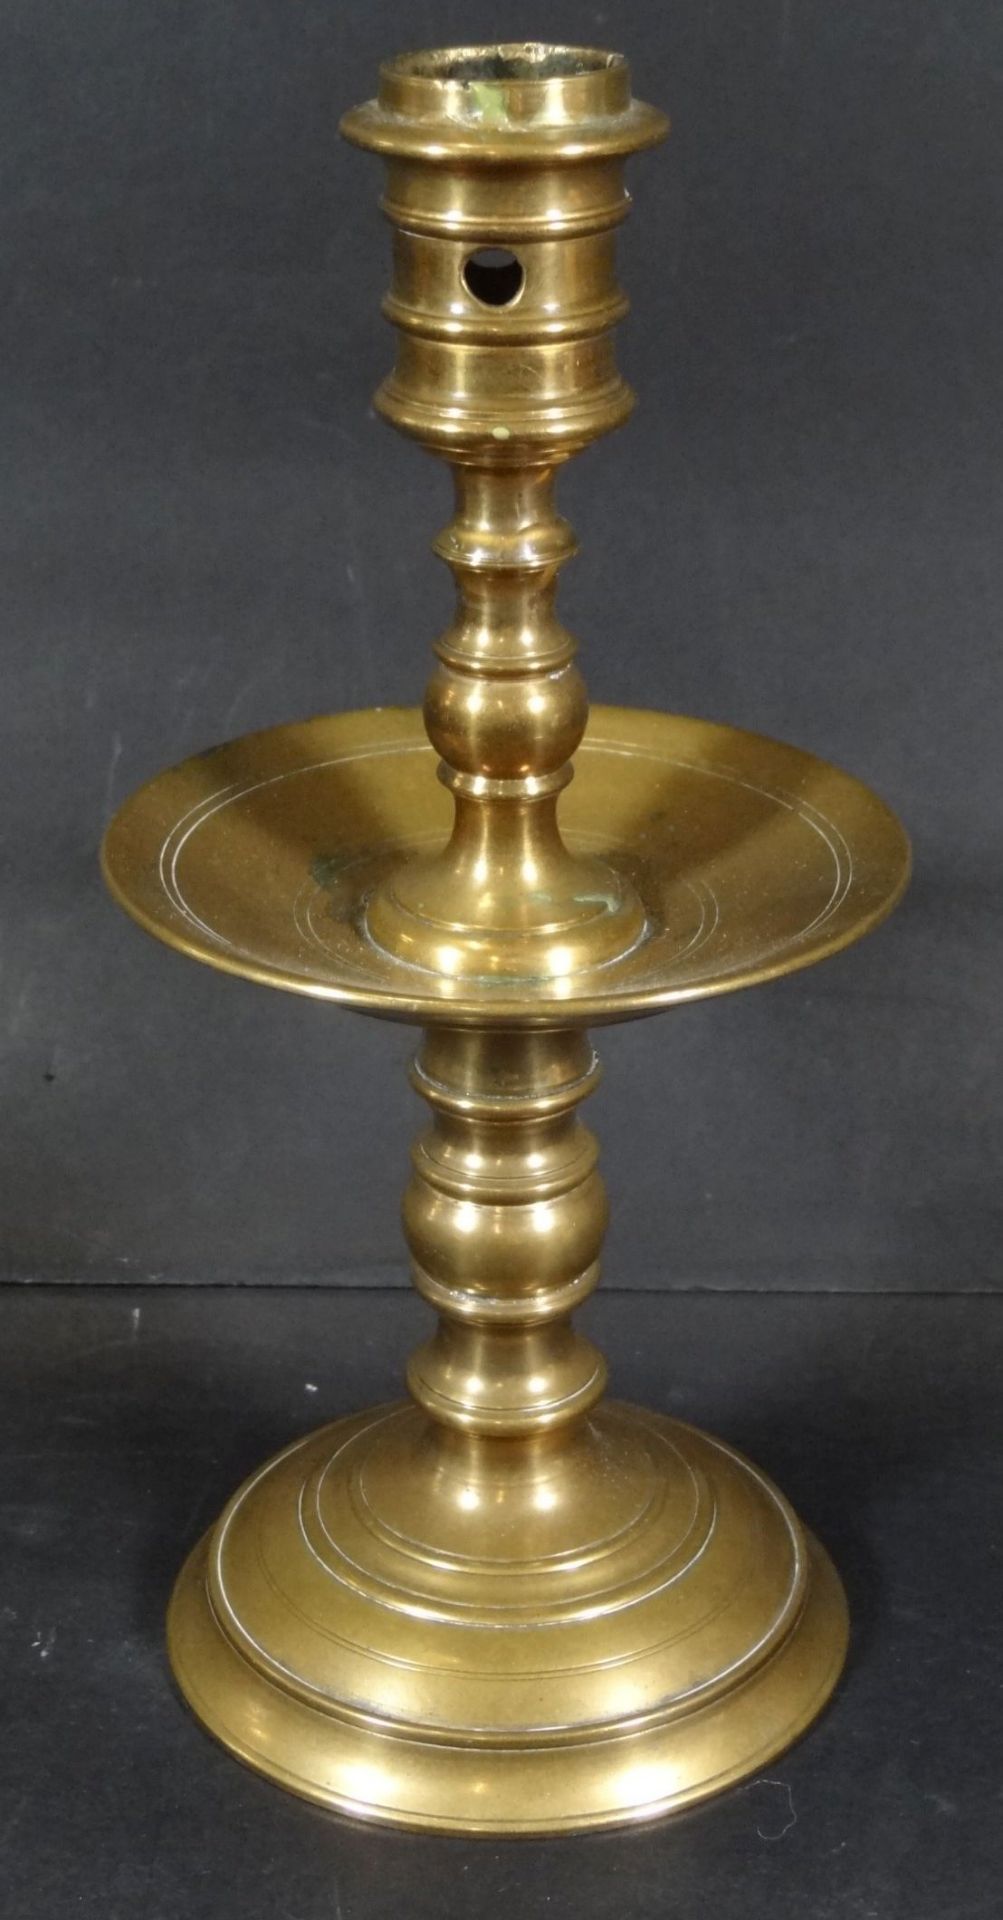 schwerer Bronze-Kerzenhalter mit Auffangschale, H-20 cm- - -22.61 % buyer's premium on the hammer